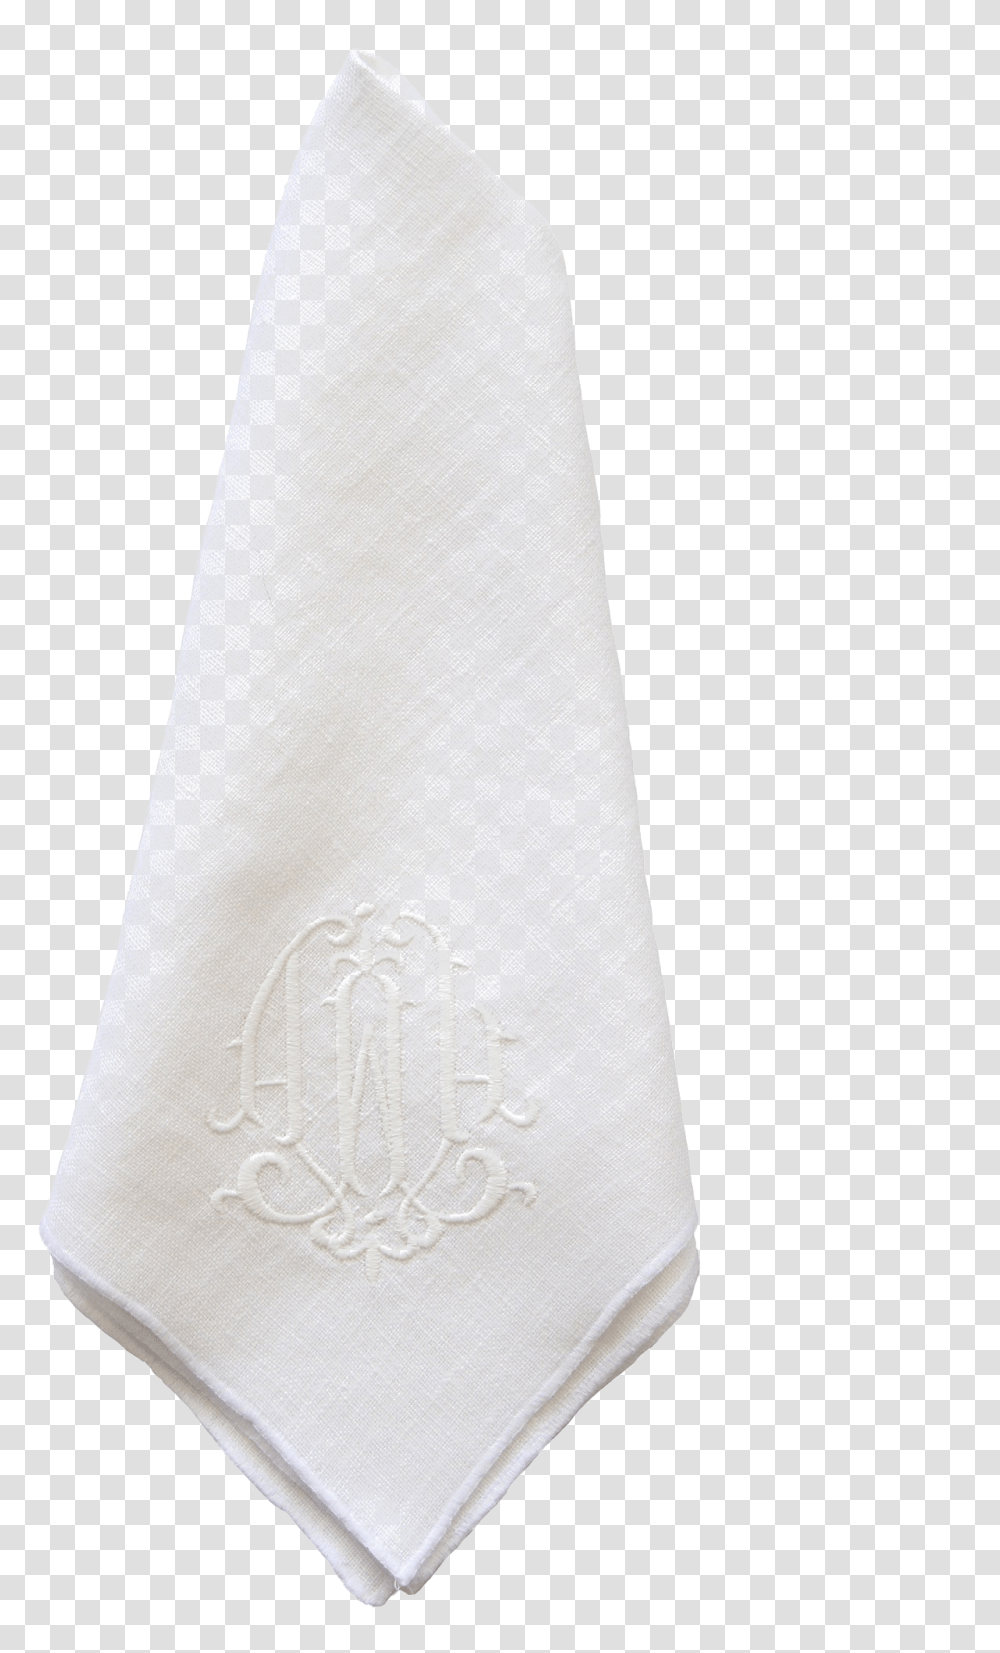 Napkin Images Lace, Tie, Accessories, Accessory, Necktie Transparent Png